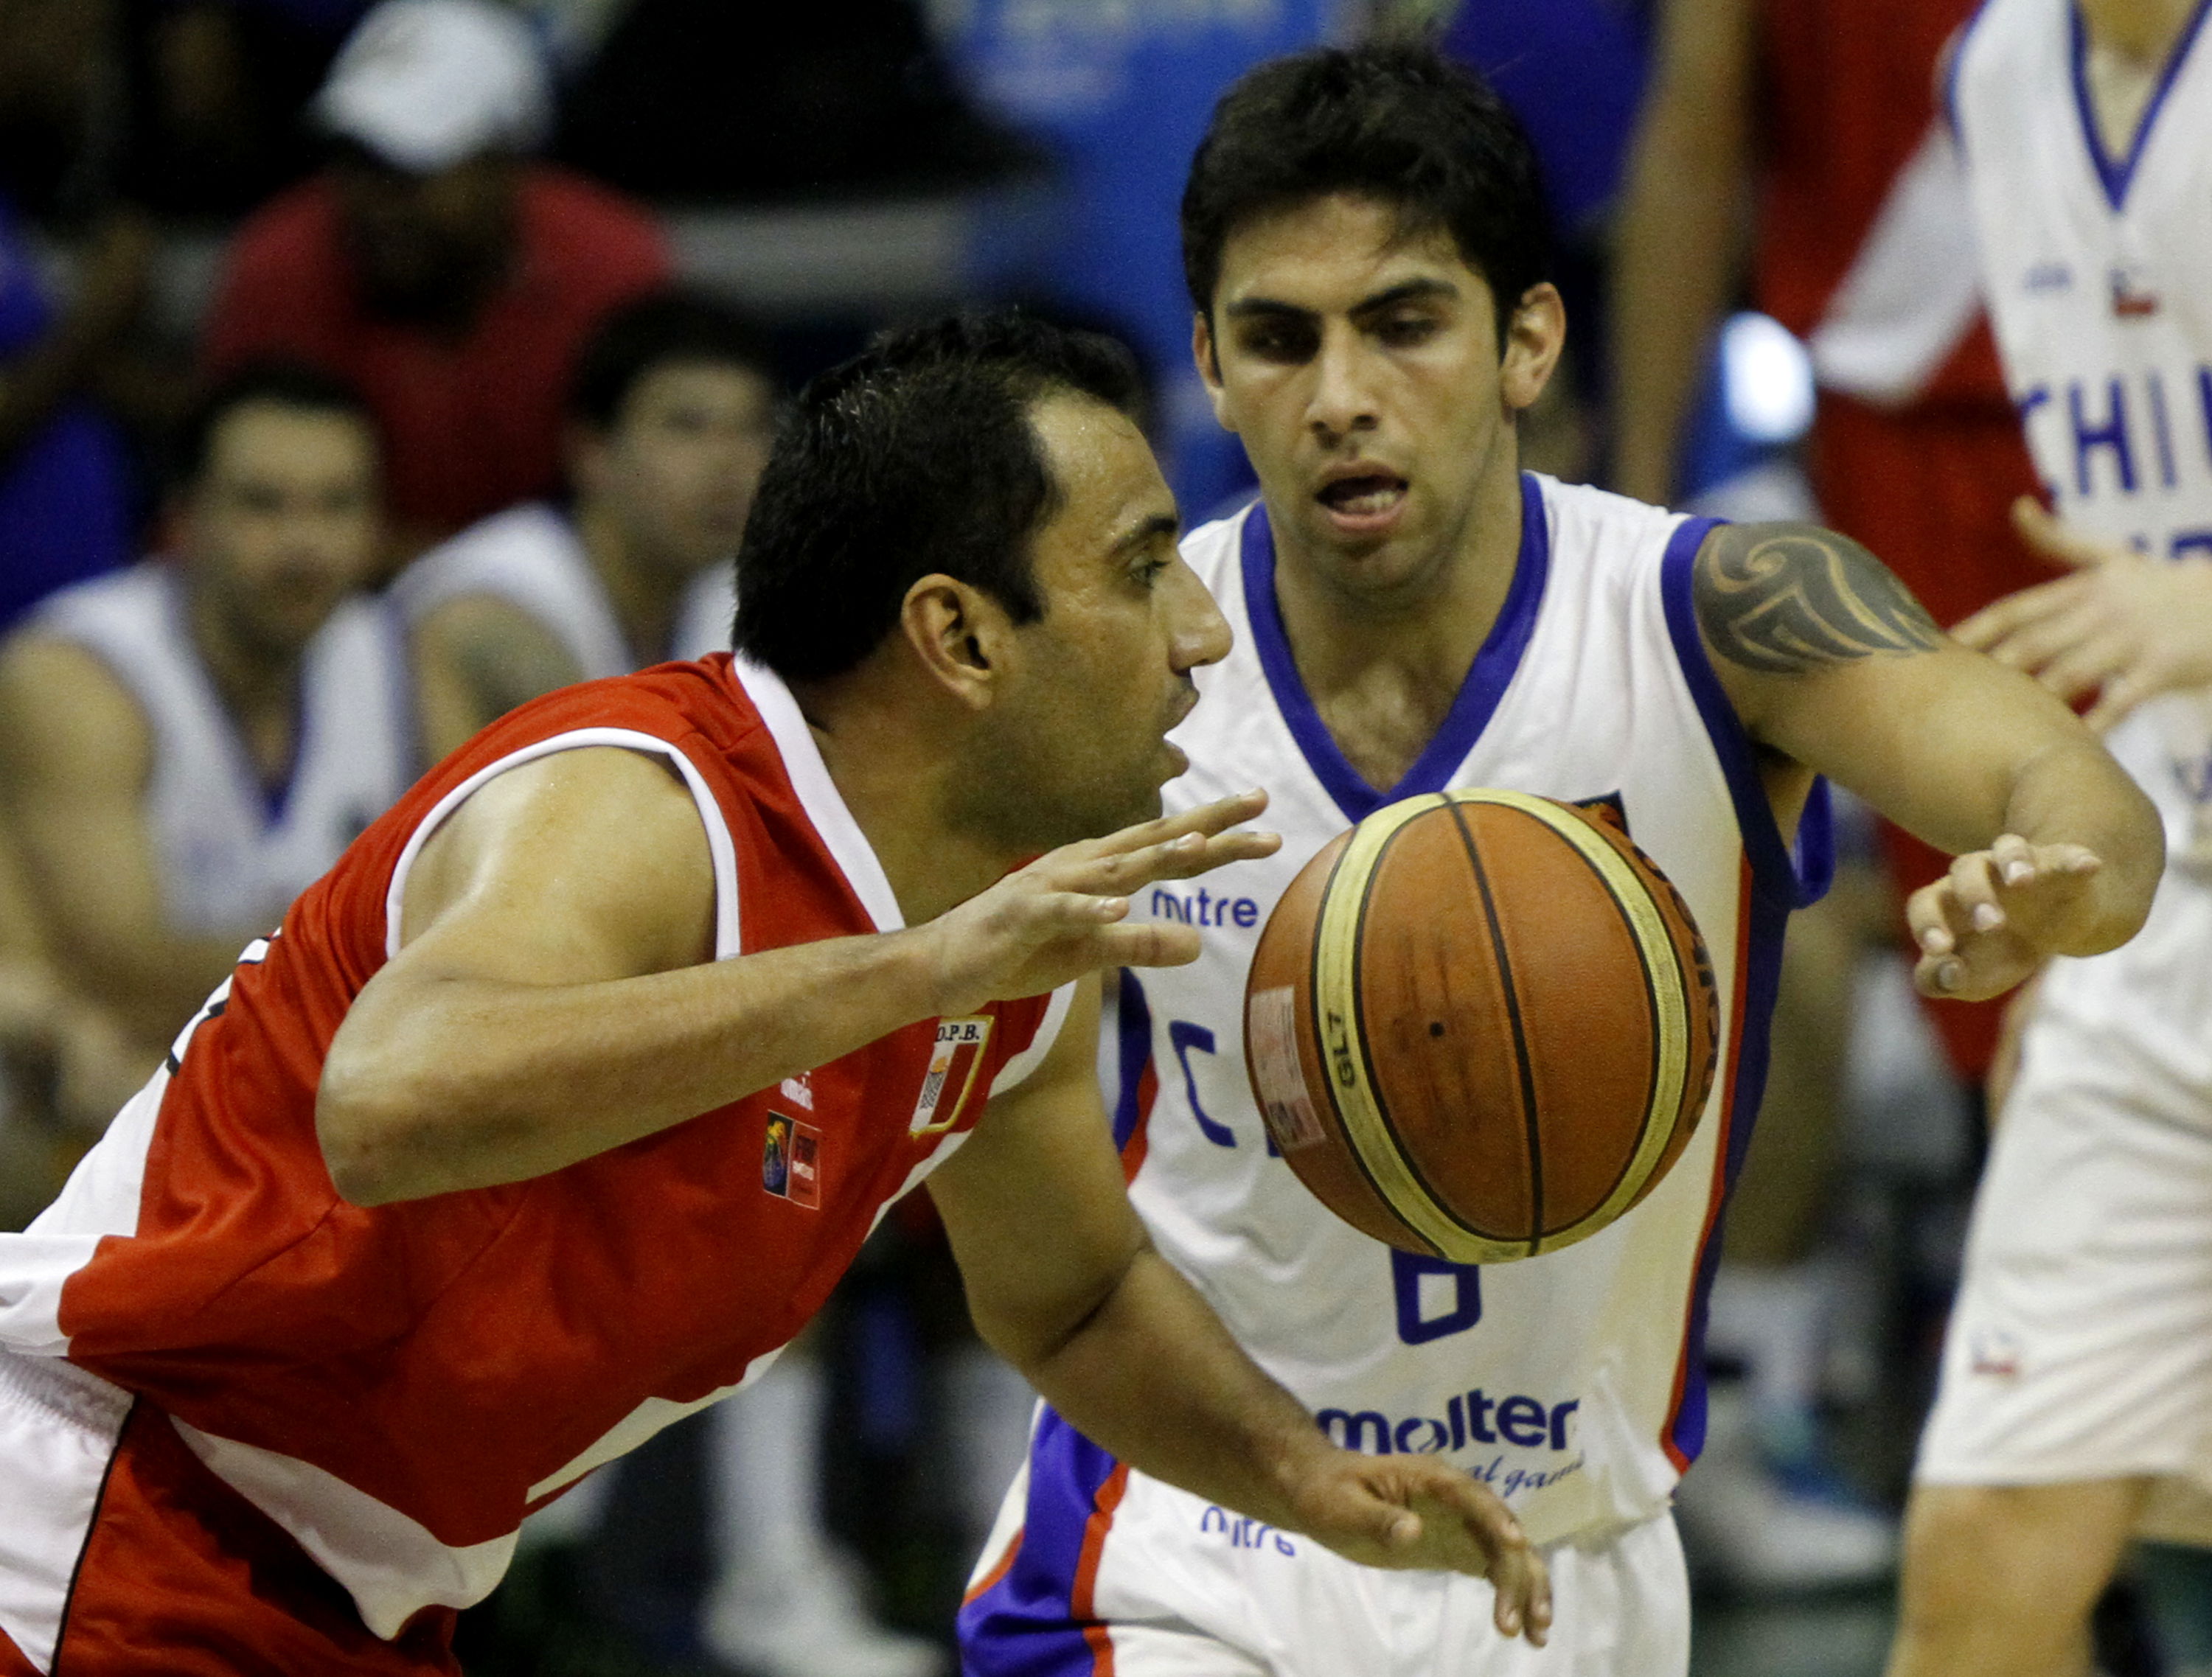  La selección chilena de baloncesto derrotó a Perú este sábado, 85-70. (Foto:  AVN) 